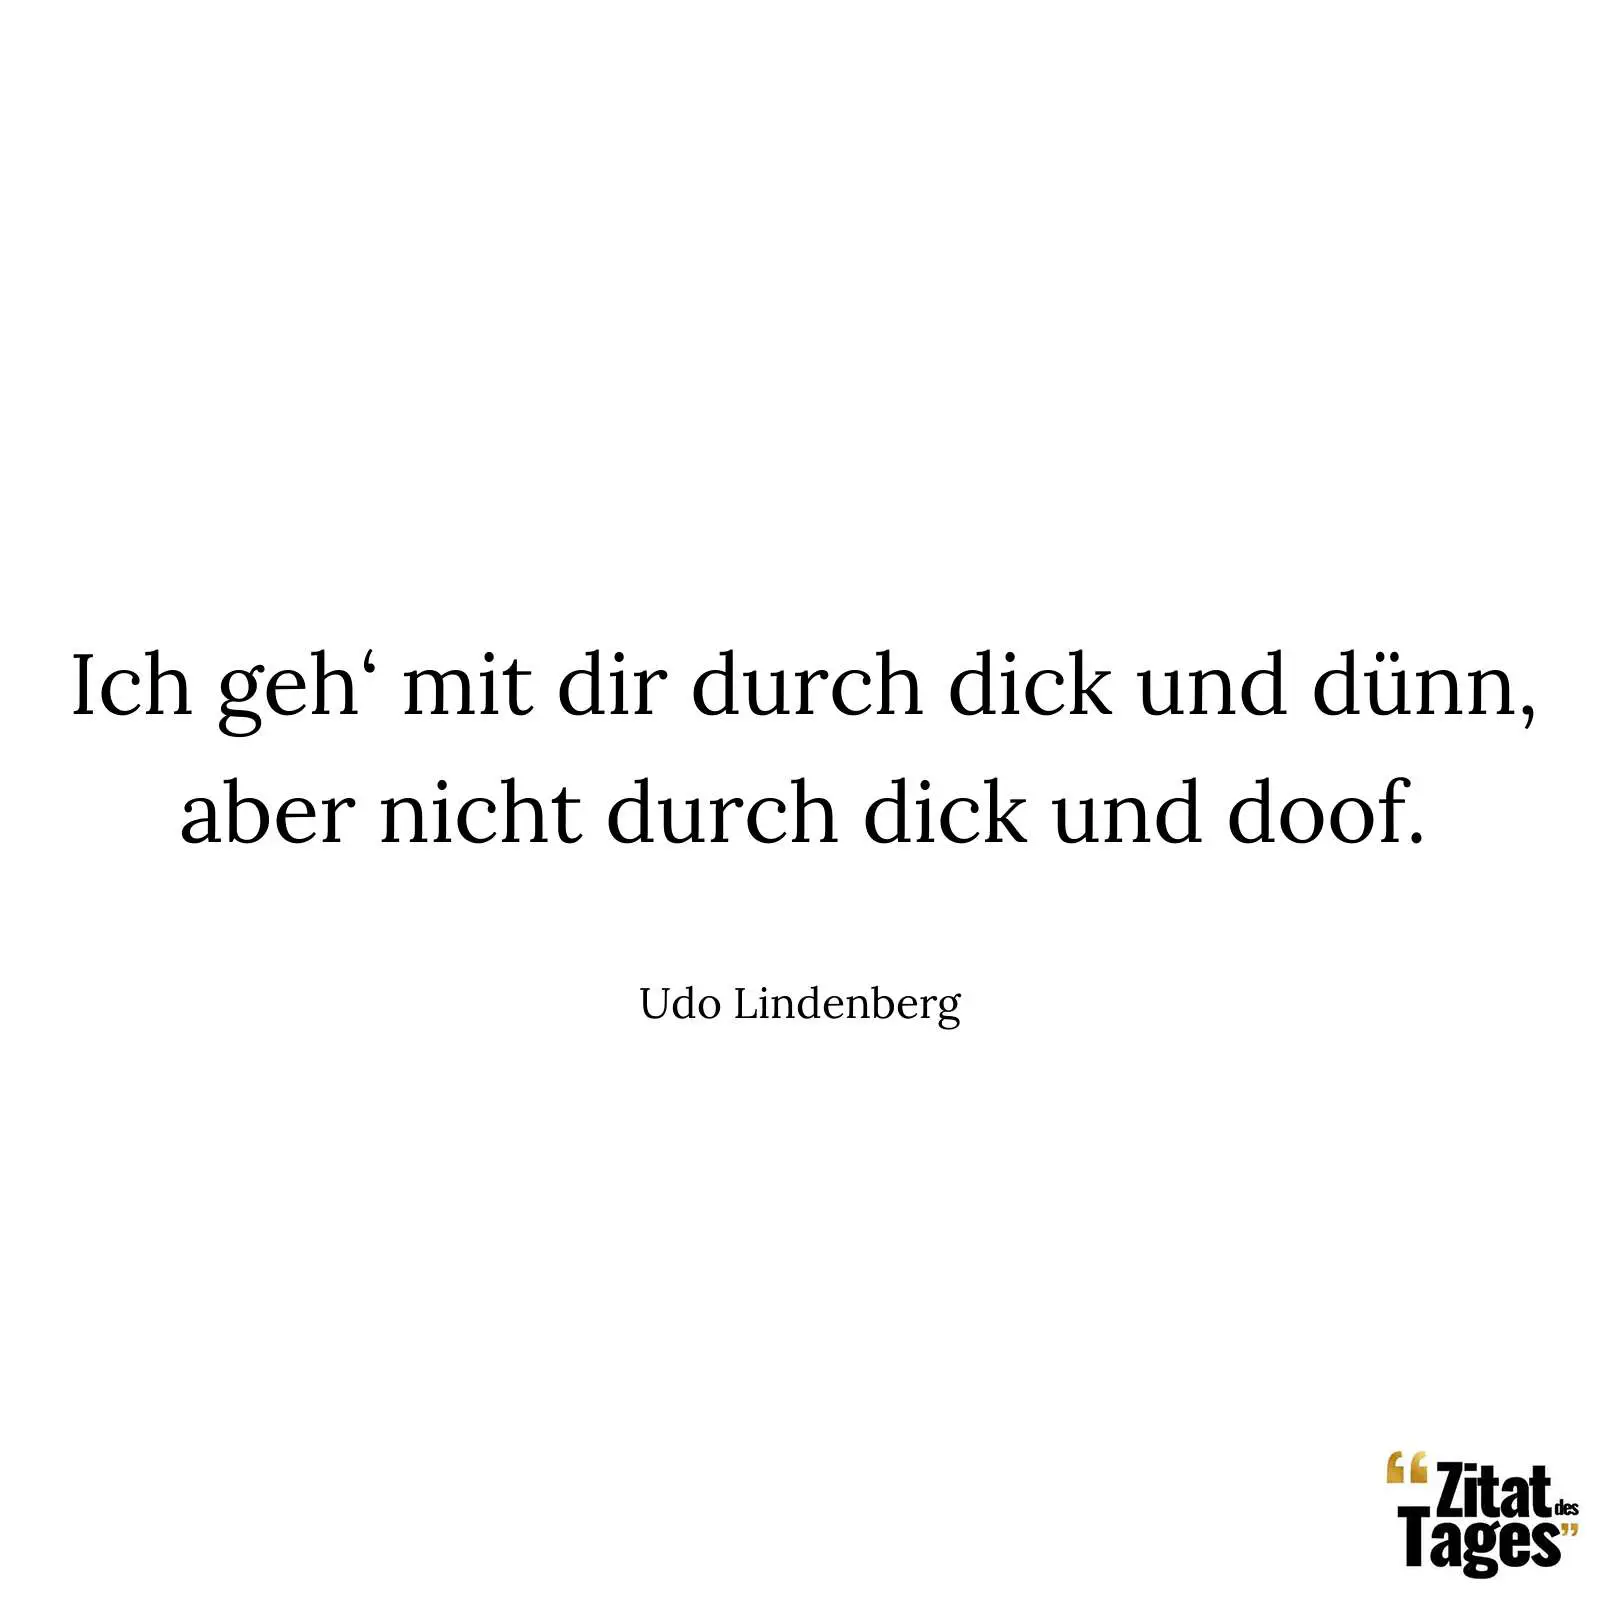 Ich geh‘ mit dir durch dick und dünn, aber nicht durch dick und doof. - Udo Lindenberg